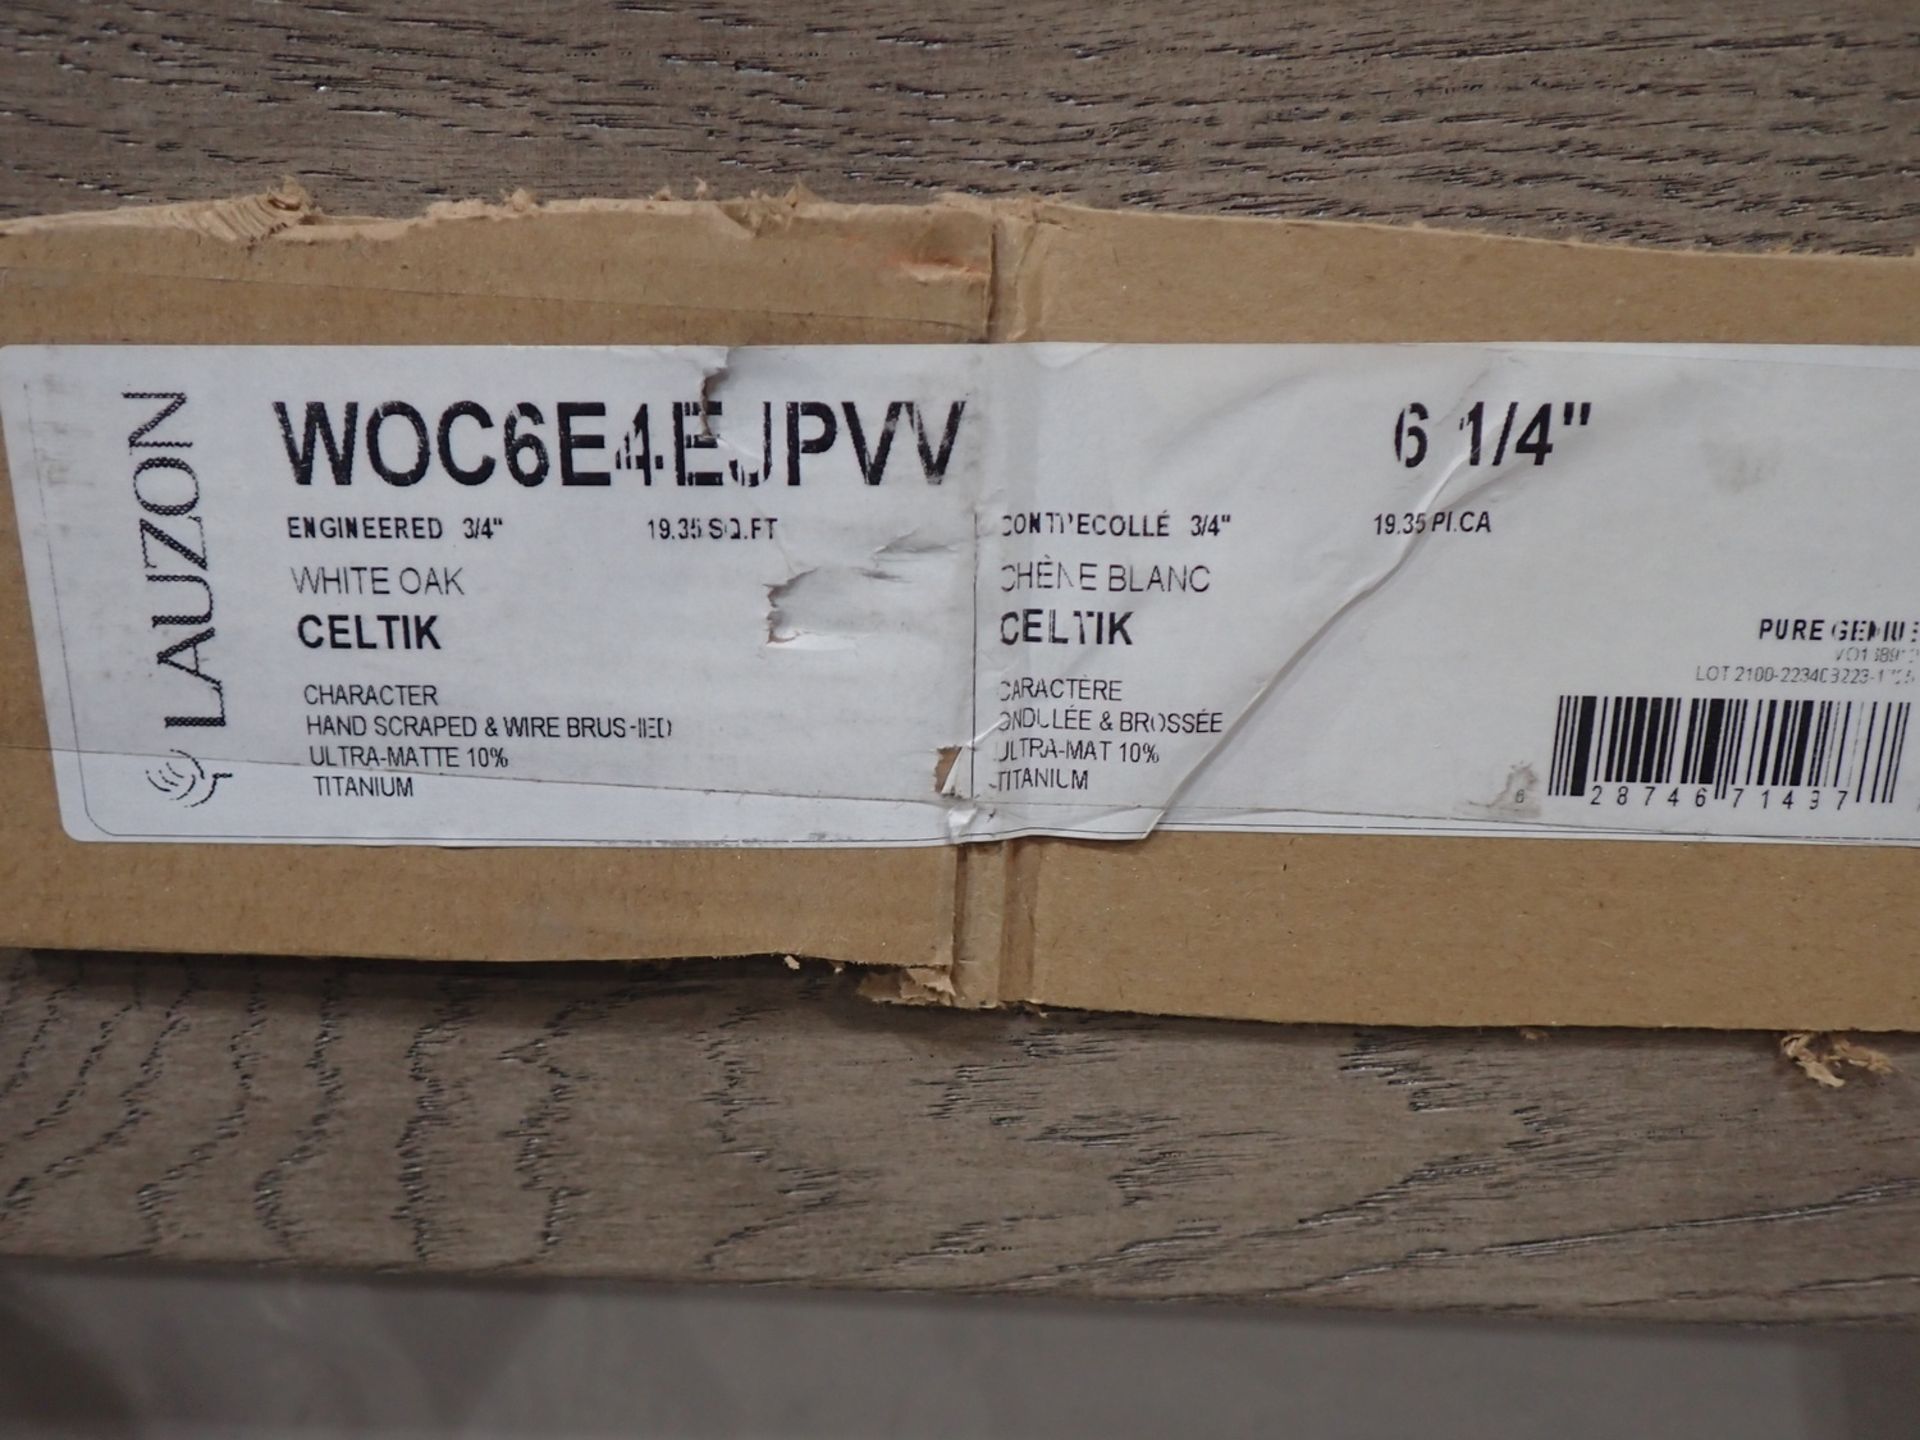 BOXES - WHITE OAK CELTIK 3/4" X 6.25" ENGINEERED HARDWOOD FLOORING (19.35 SQFT/BOX) - Image 2 of 3